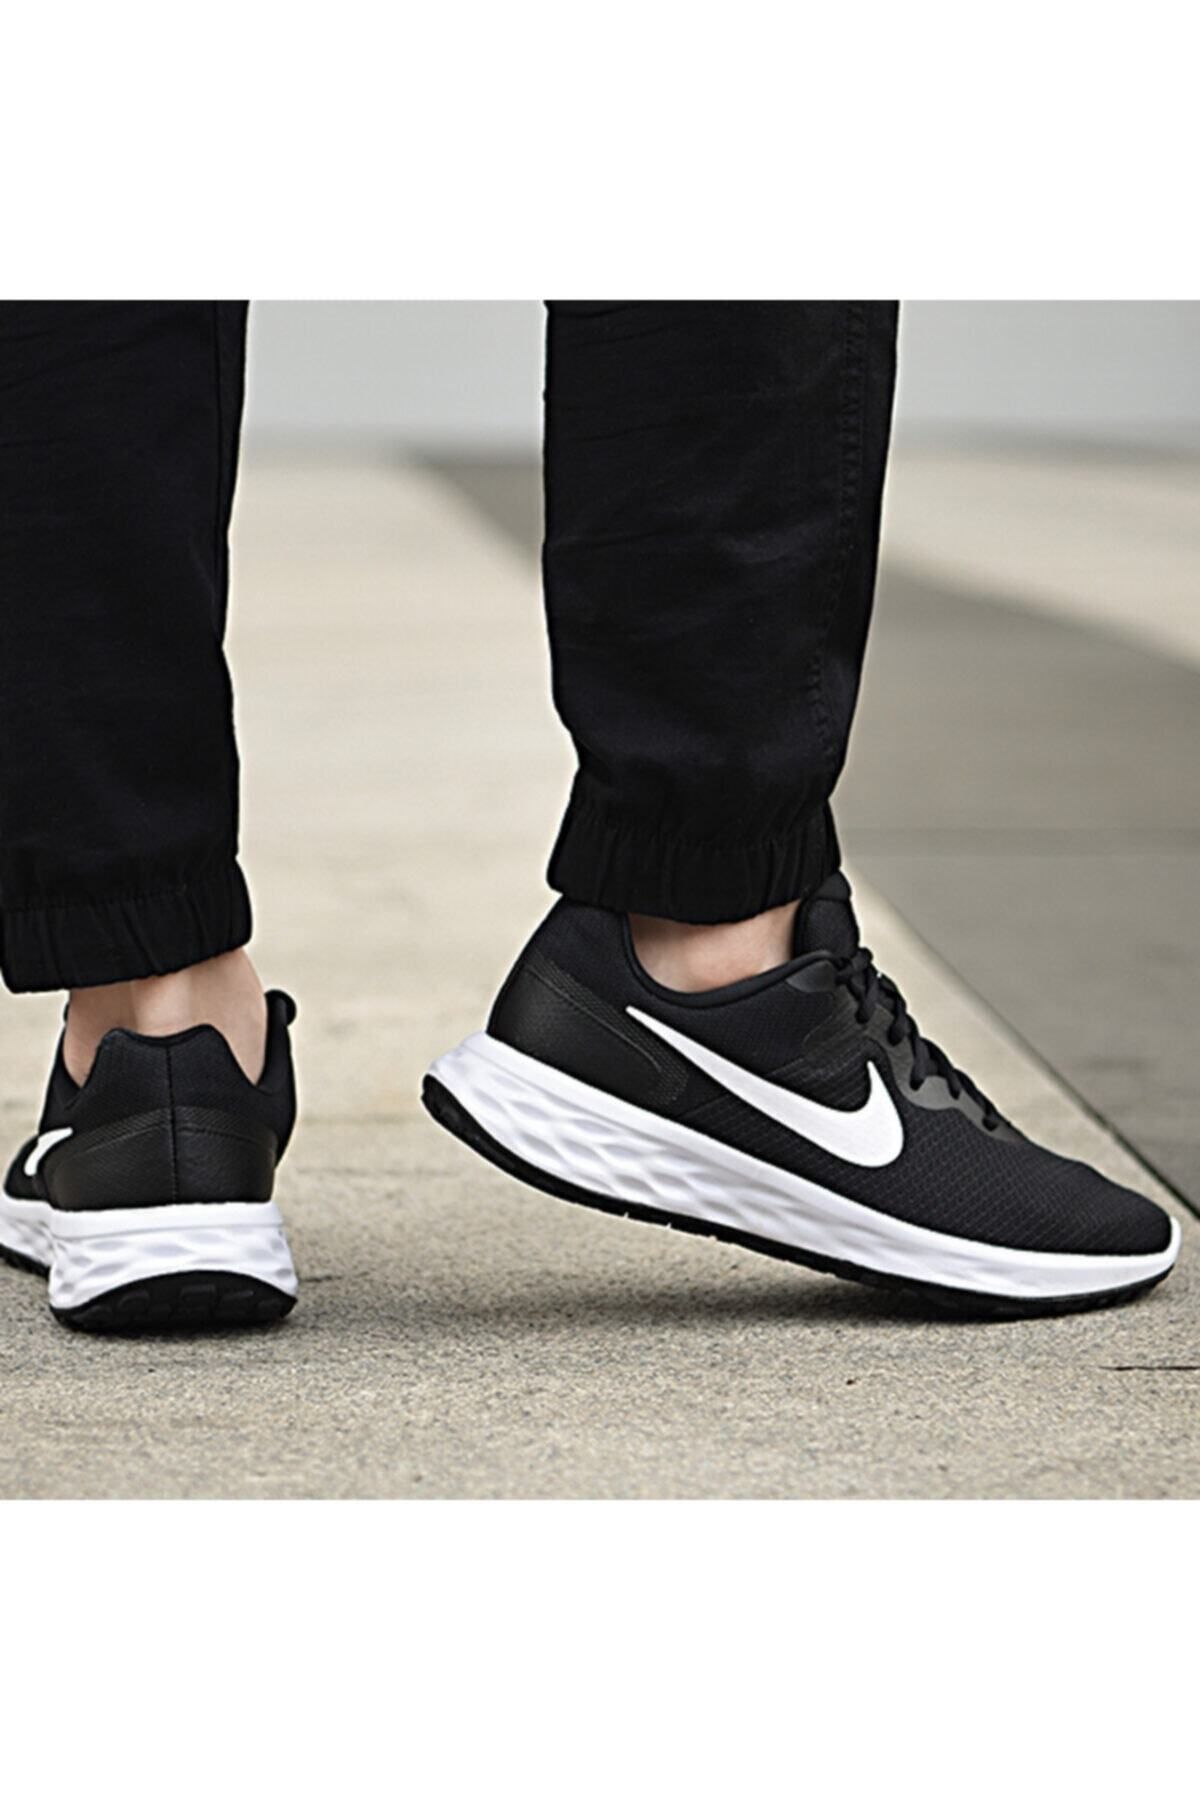 Nike Dc3728-003 Revolutıon 6 Nn Erkek Yürüyüş Koşu Ayakkabı